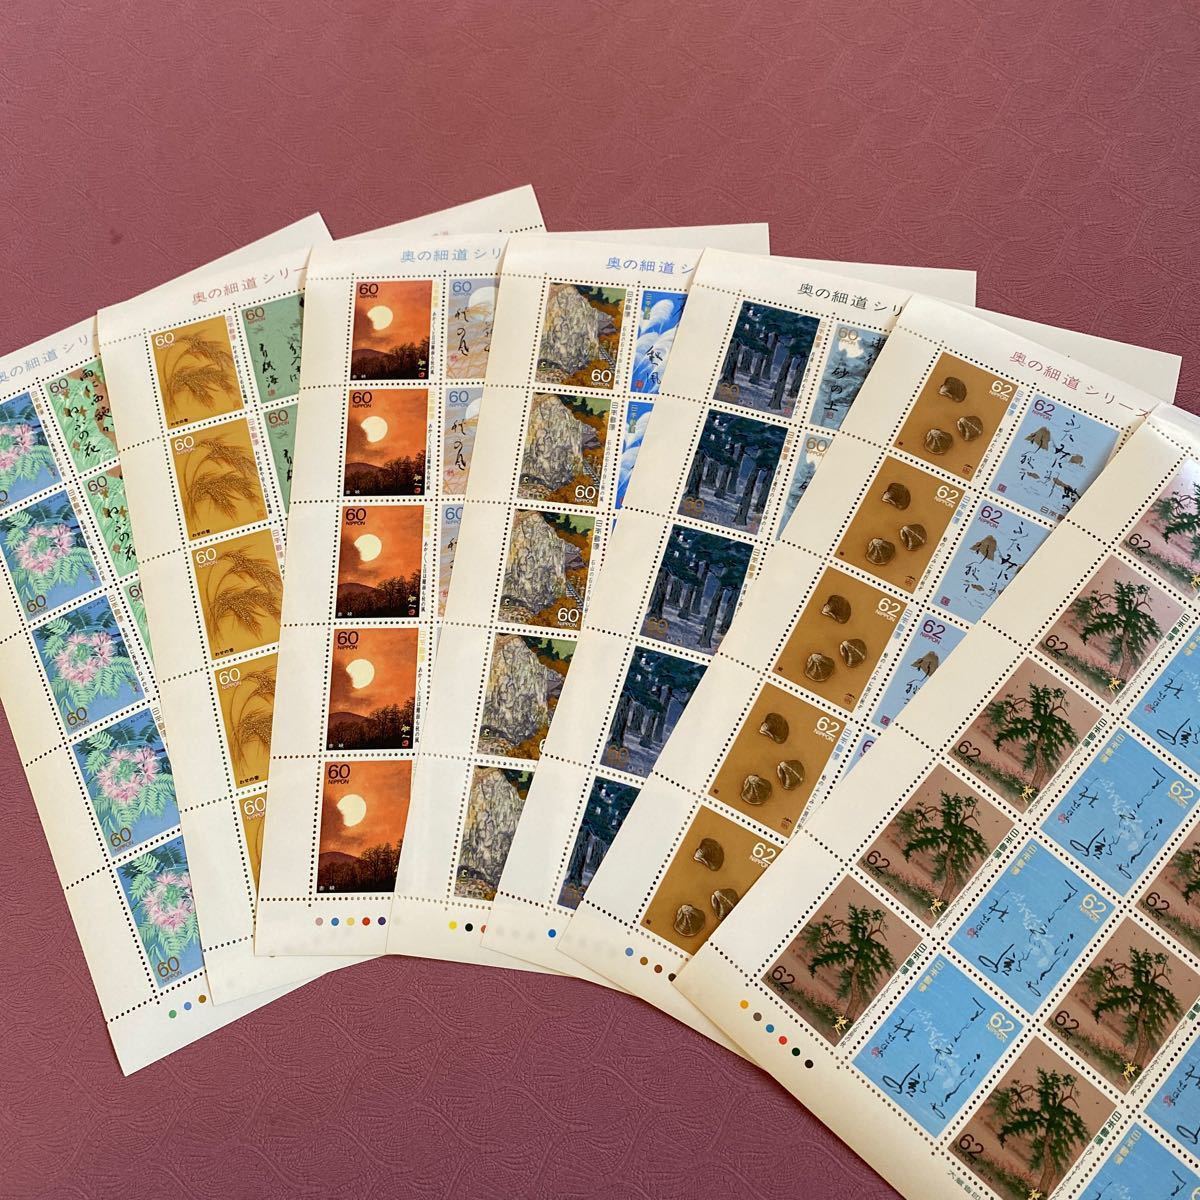 松尾芭蕉　奥の細道シリーズ　60円×20枚が1シートです　　19シートの出品です　切手趣味週間をオマケとして追加します。